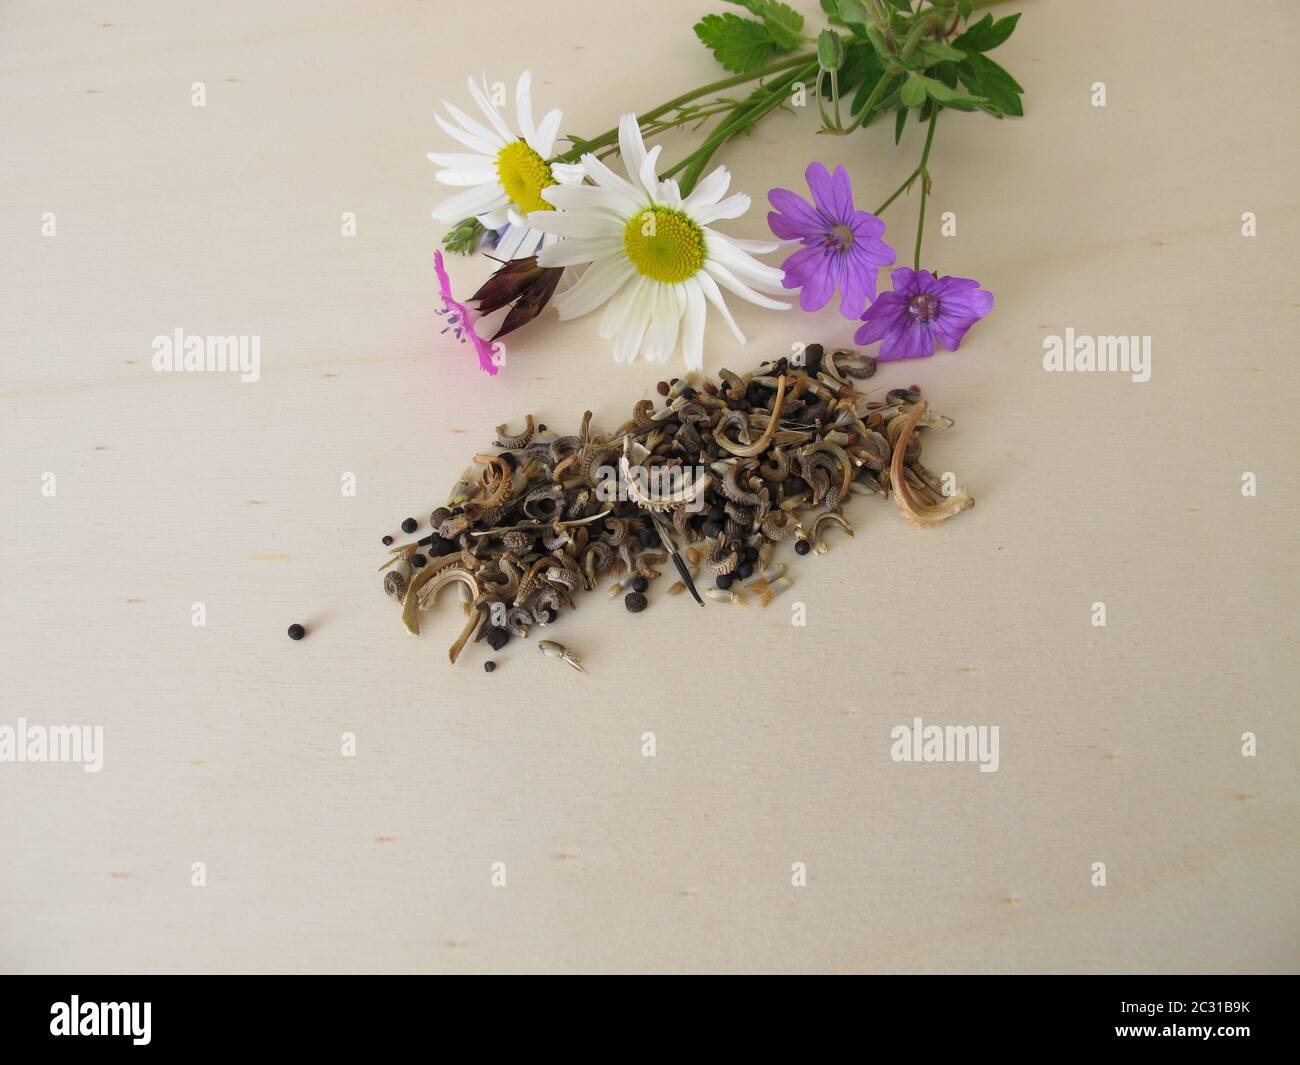 Mezcla de semillas amigables con abejas y flores silvestres para abejas silvestres y otros insectos Foto de stock